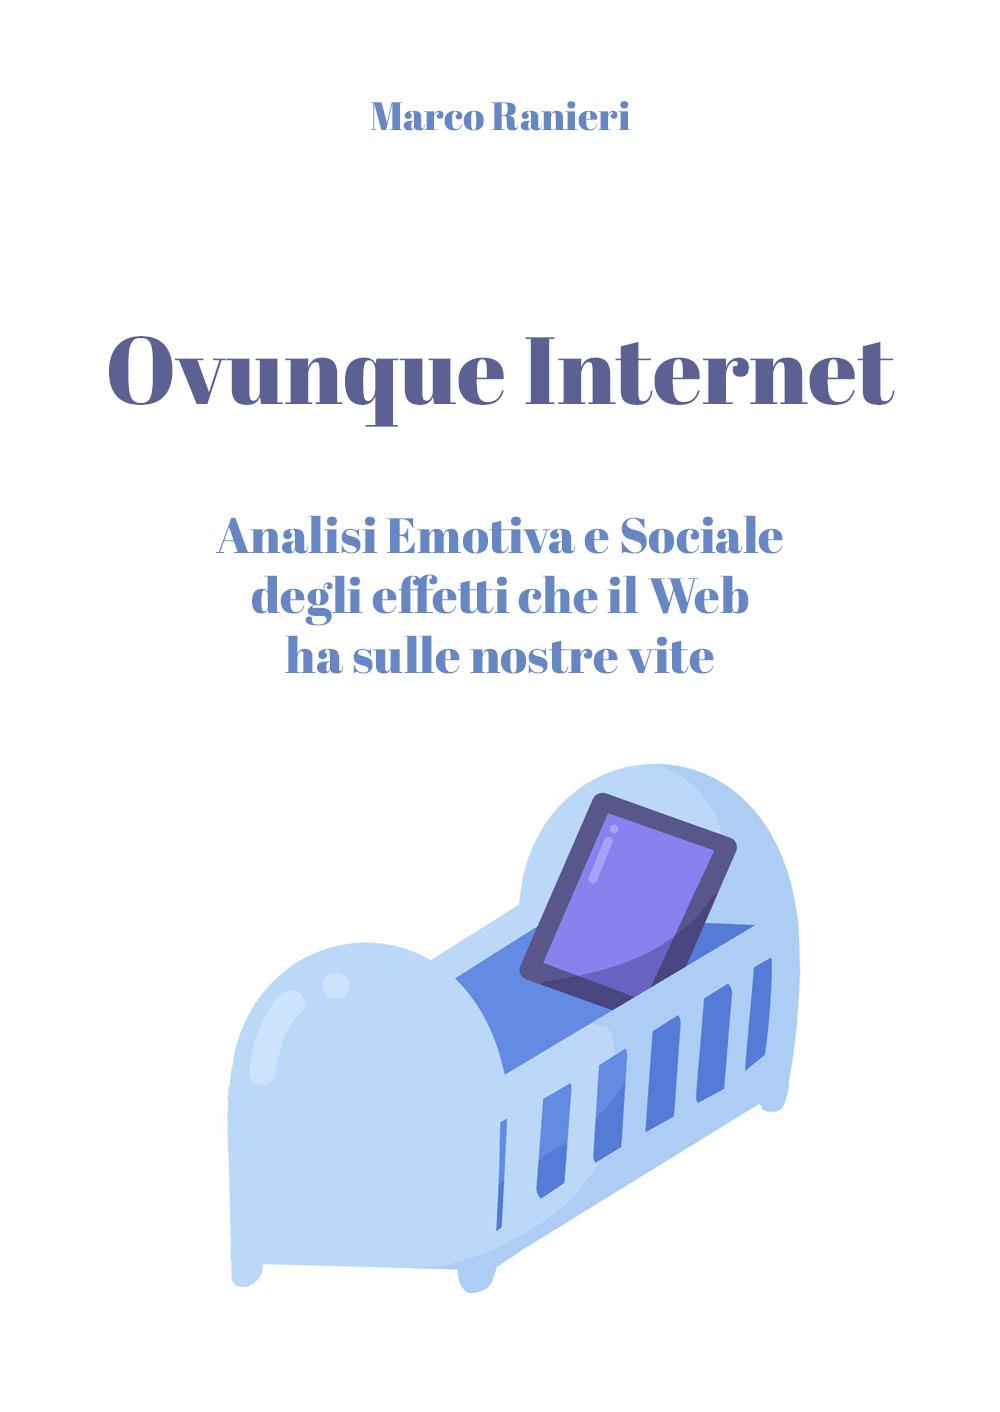 Ovunque Internet: Analisi Emotiva e Sociale degli effetti che il Web ha sulle nostre vite